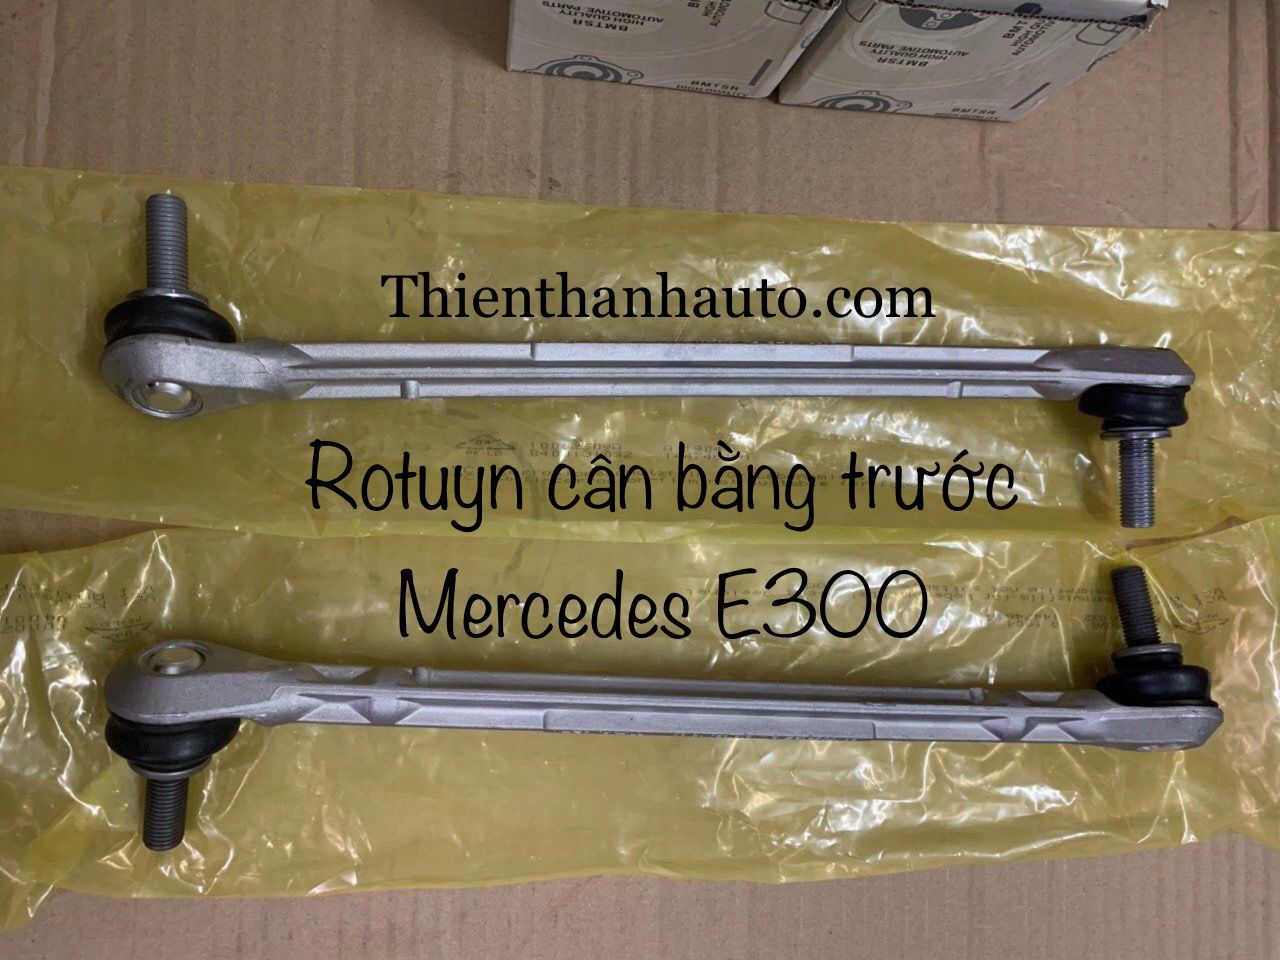 Rotuyn - Rô tuyn cân bằng trước Mercedes E300 chính hãng - Thienthanhauto.com